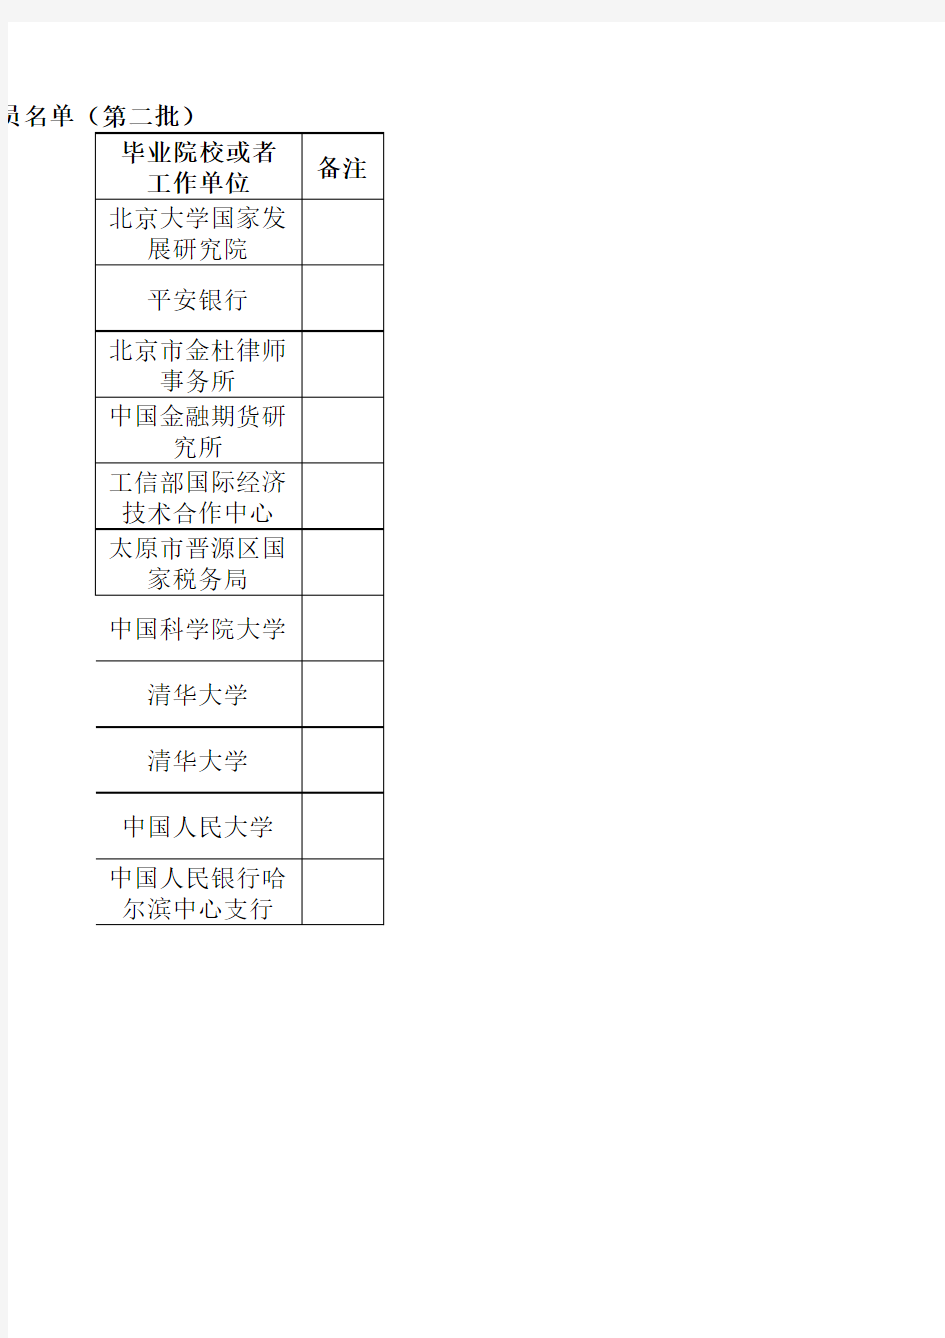 中国人民银行2015年拟录用人员名单(第二批)